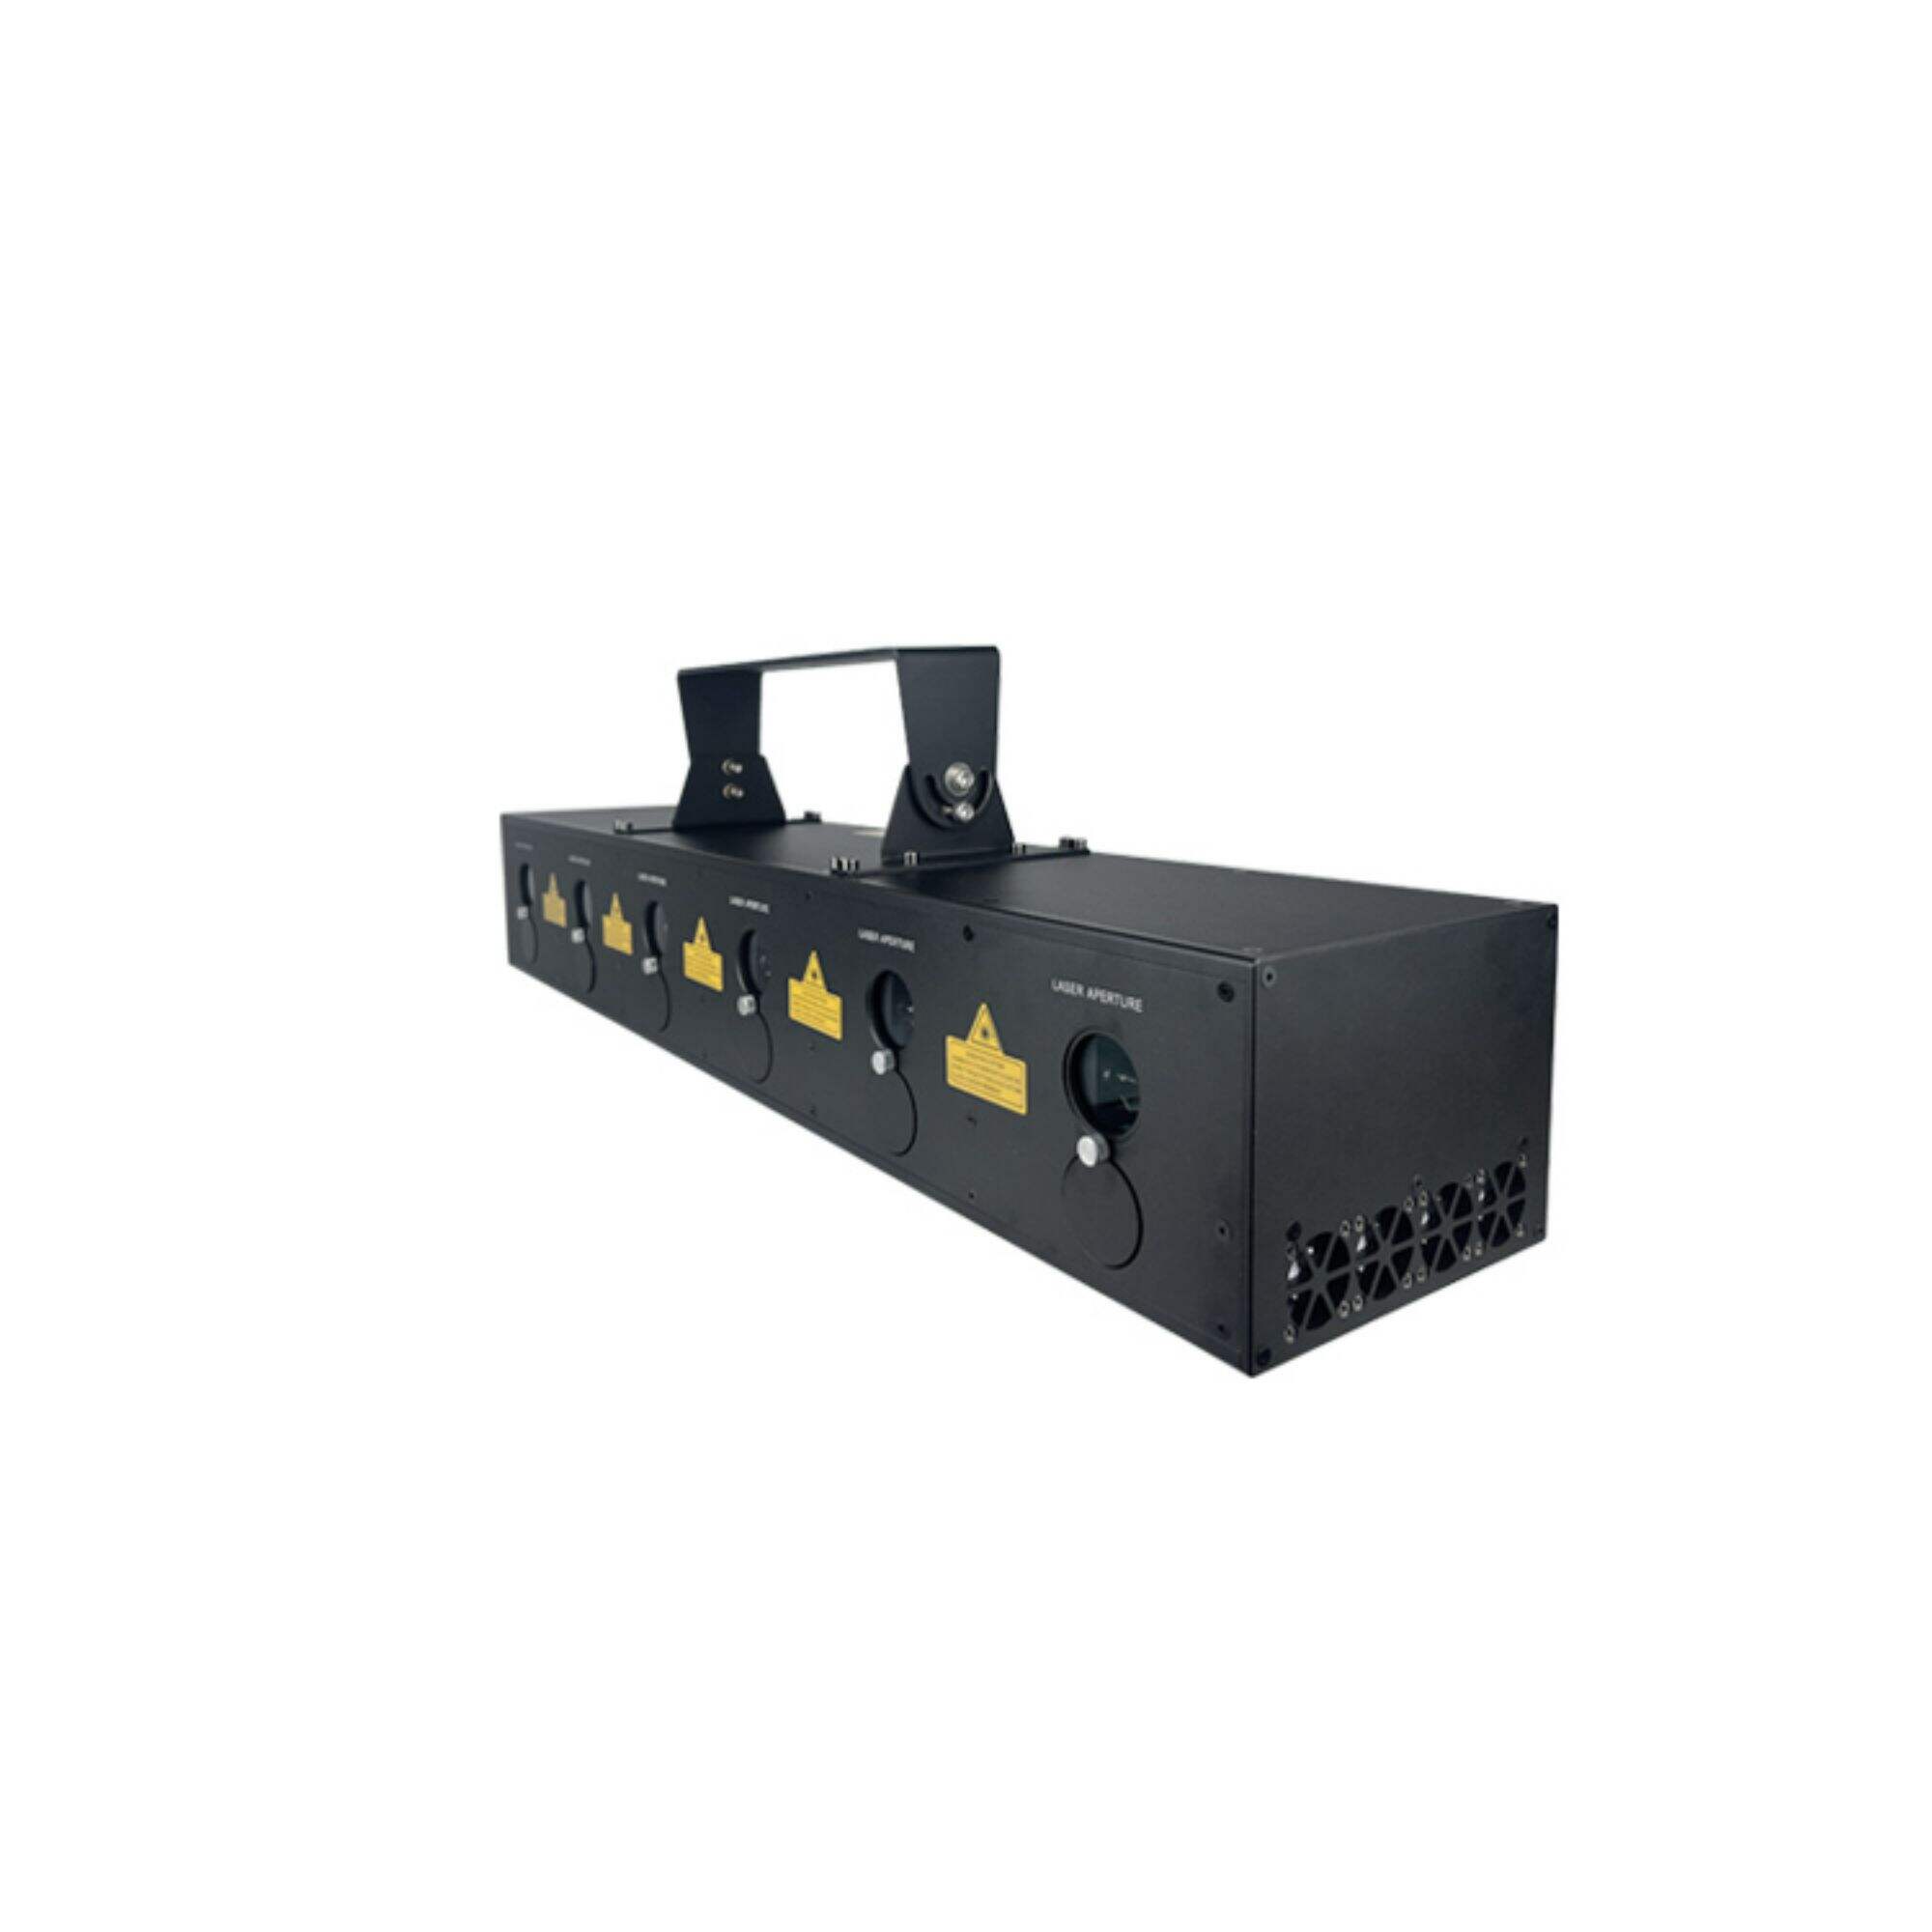 S6 12w -36w 6 head laser array laser light